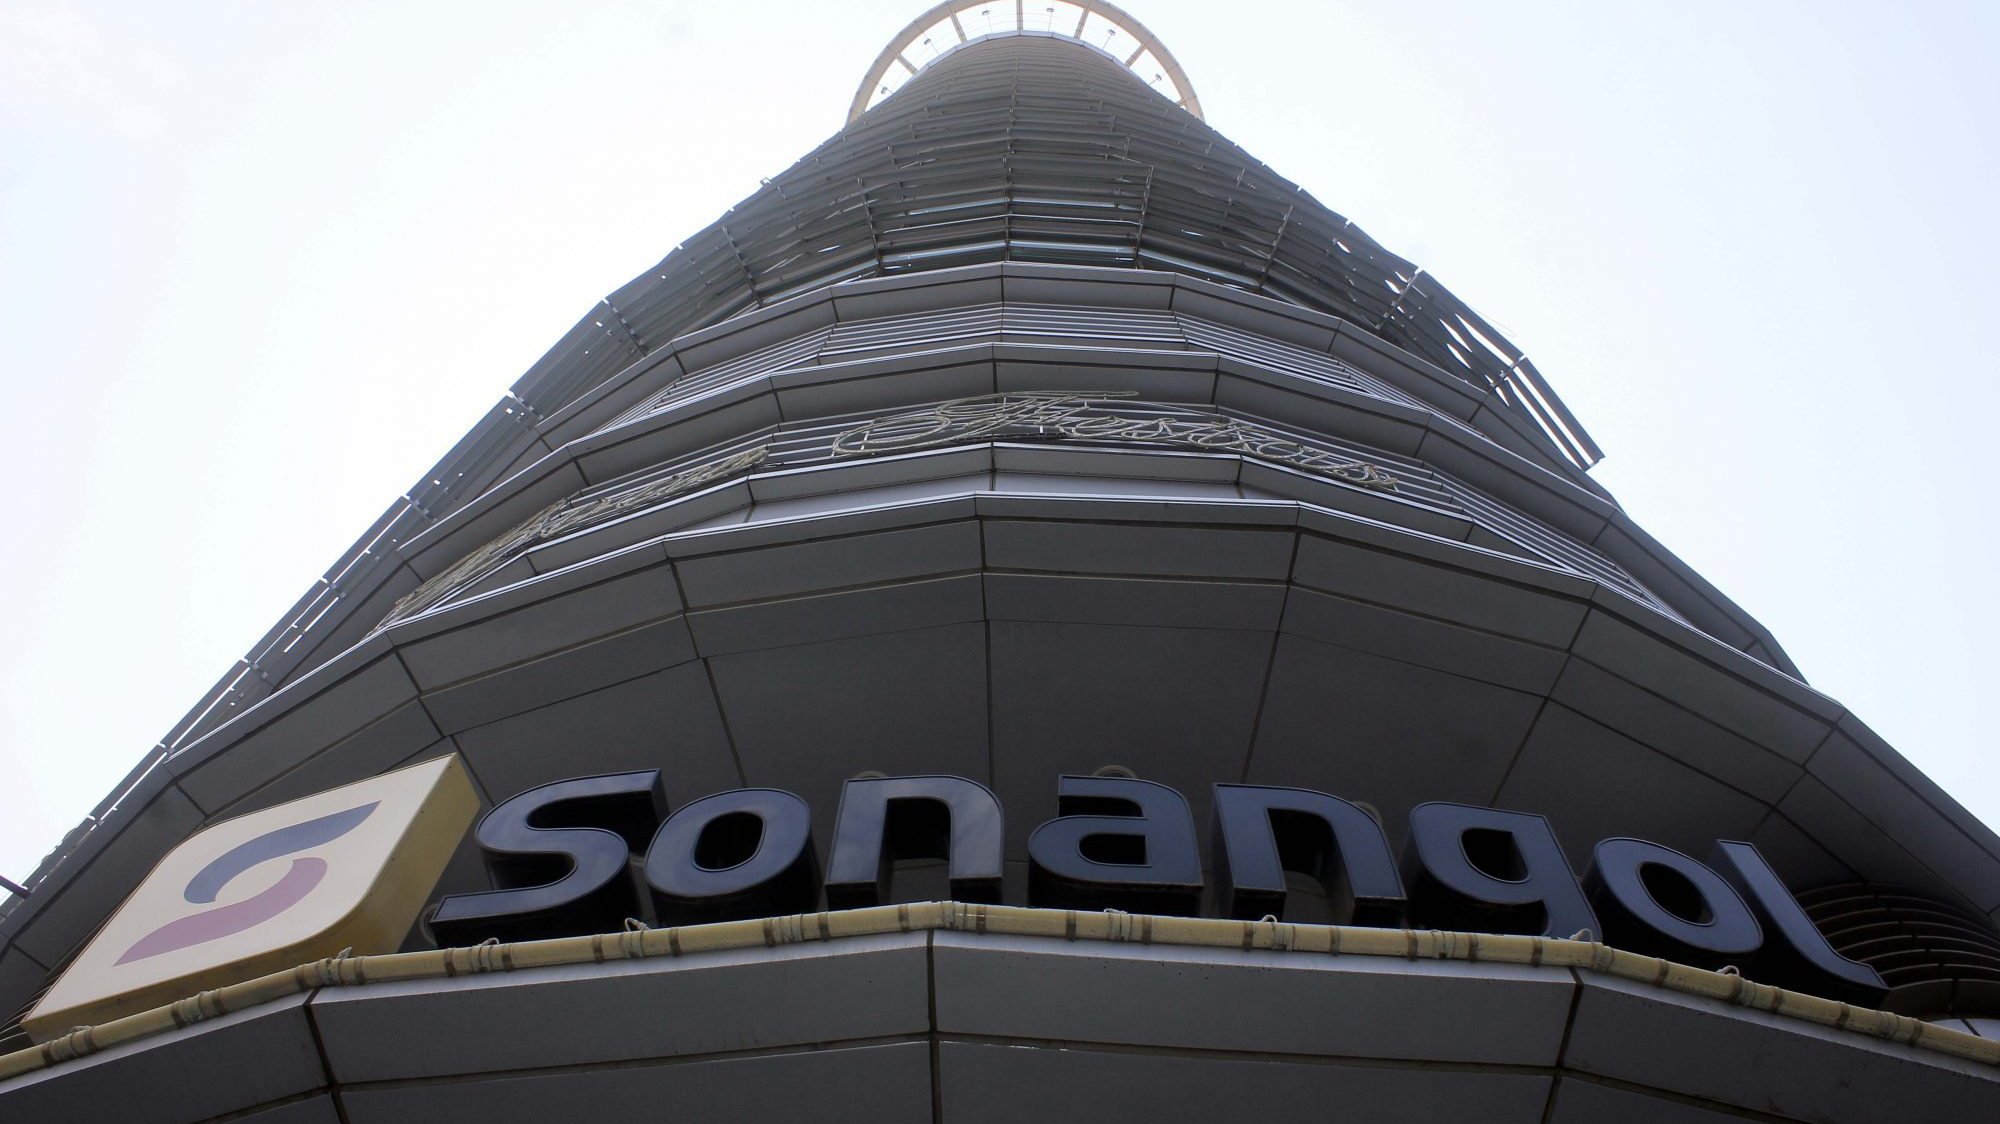 A intenção de privatizar parcialmente a Sonangol foi anunciada há já vários anos